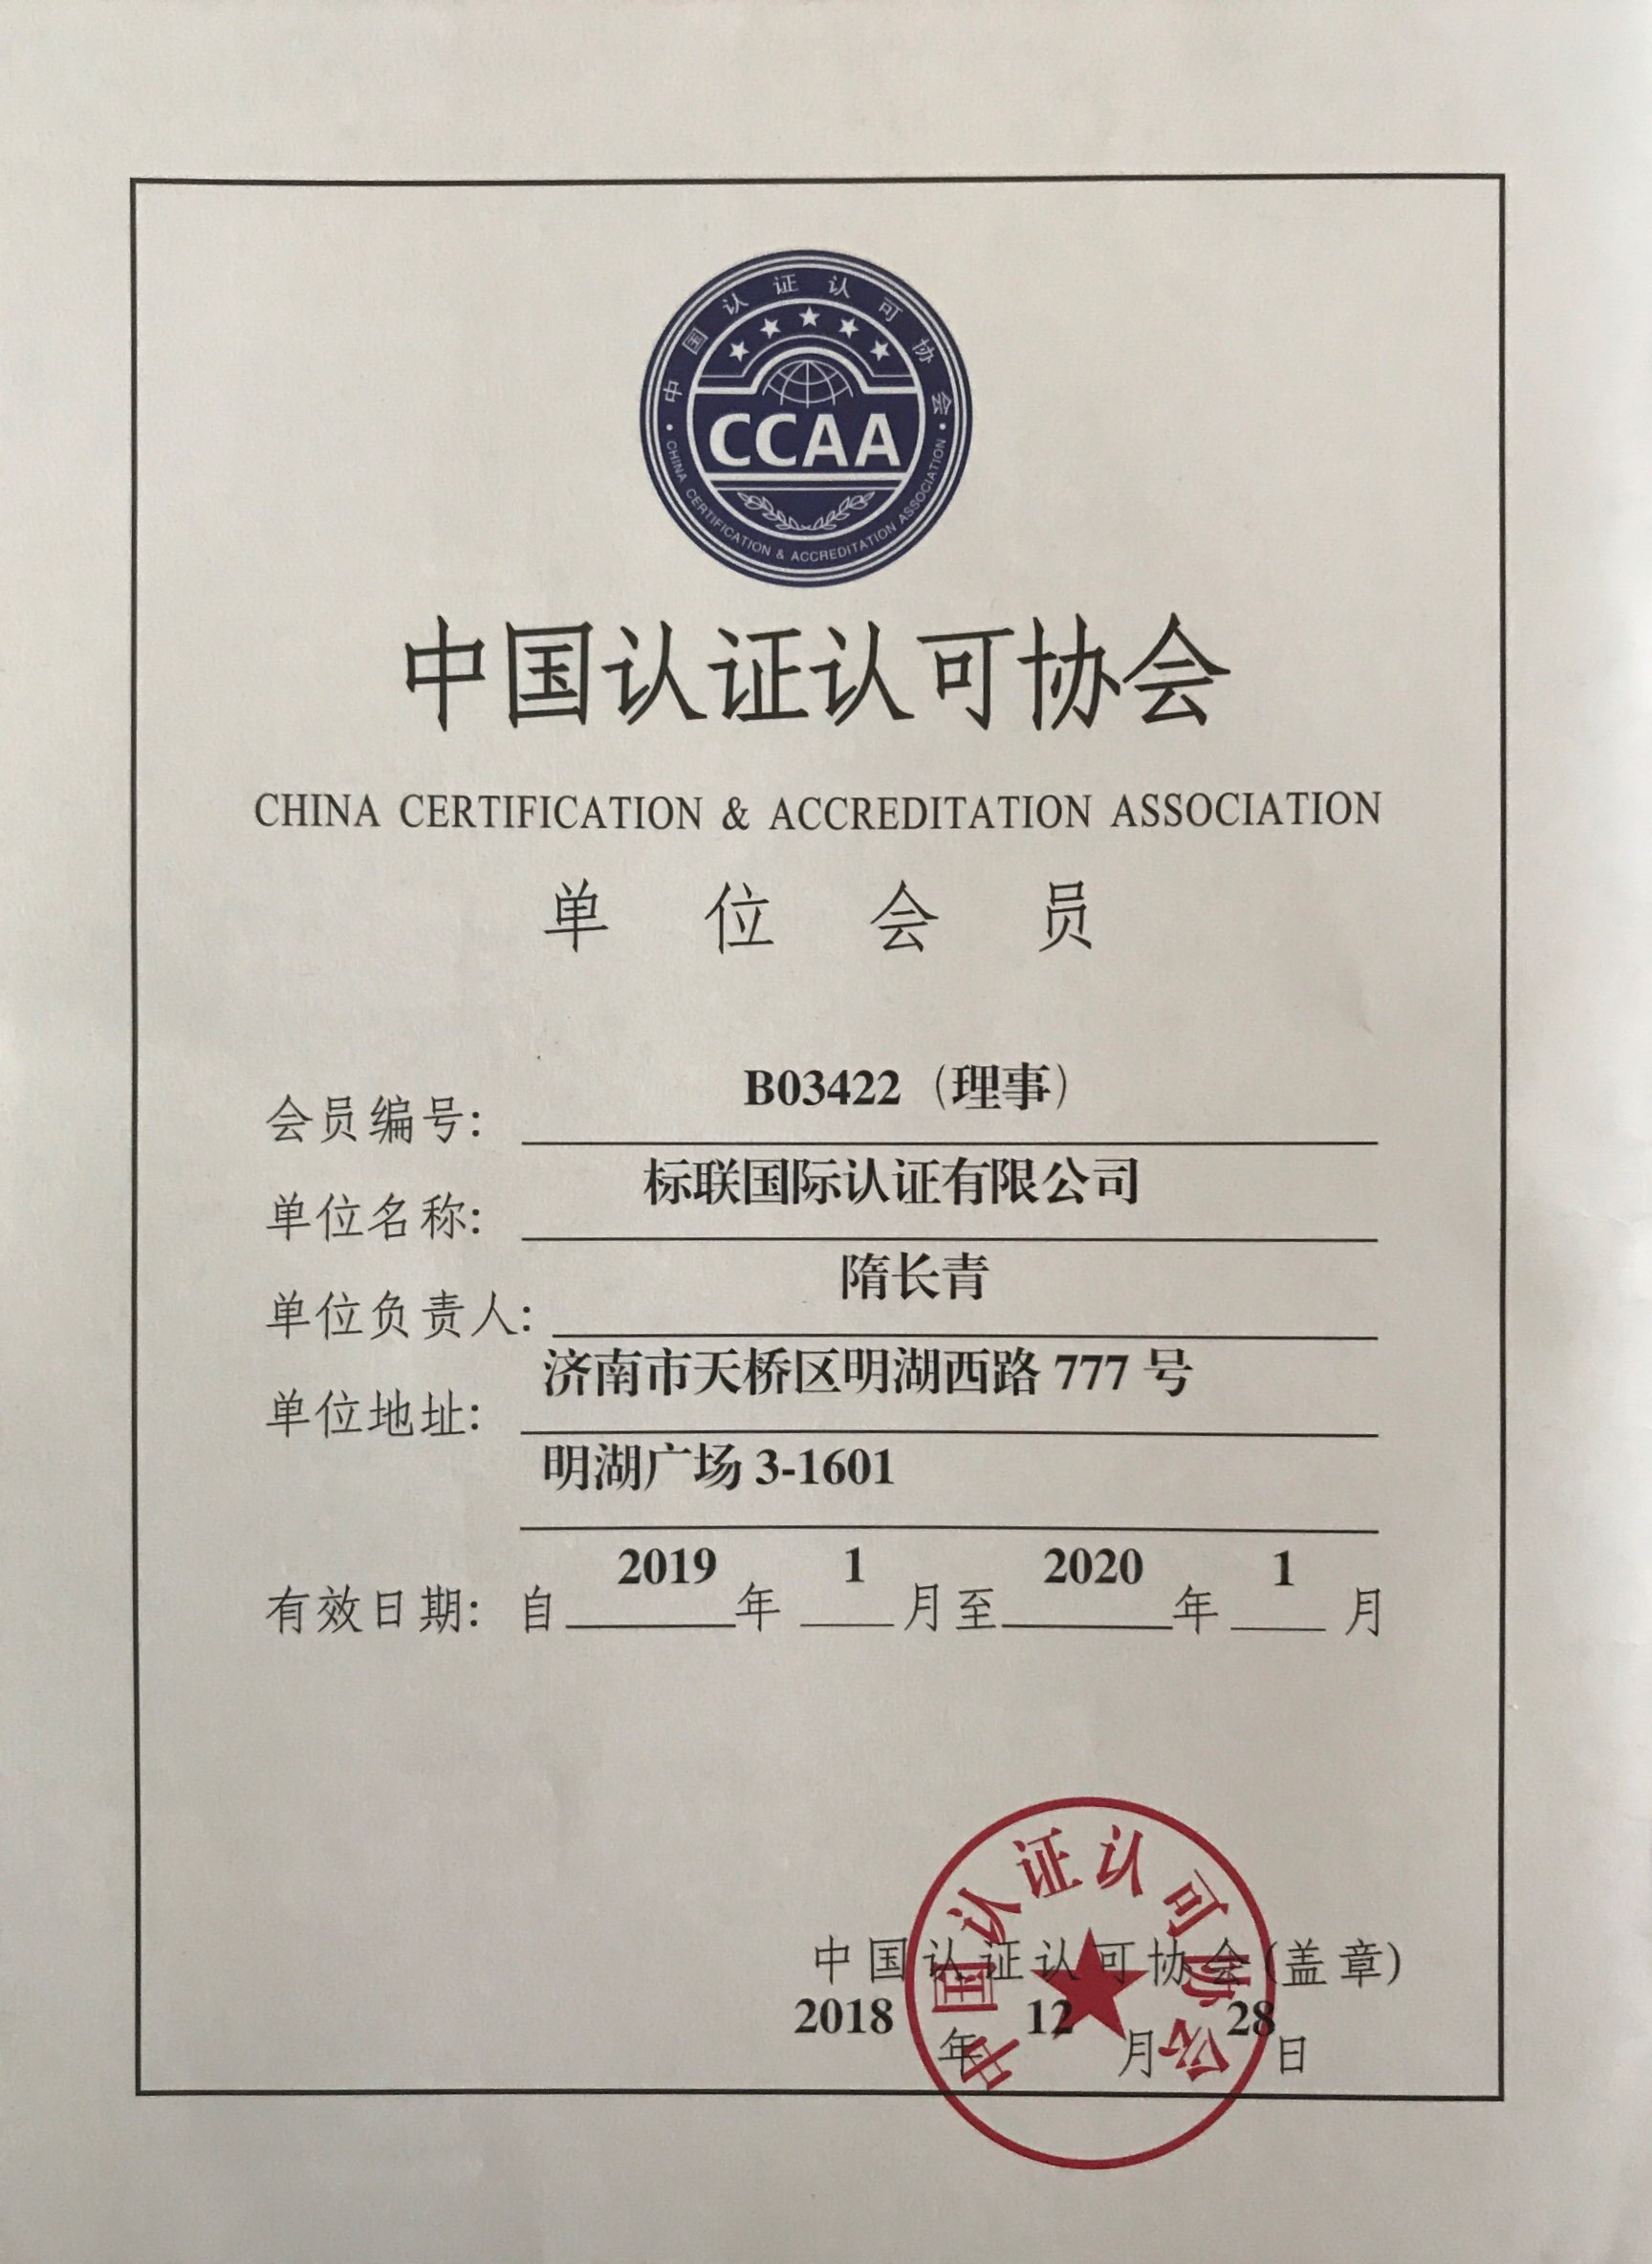 中国认证认可协会CCAA理事单位